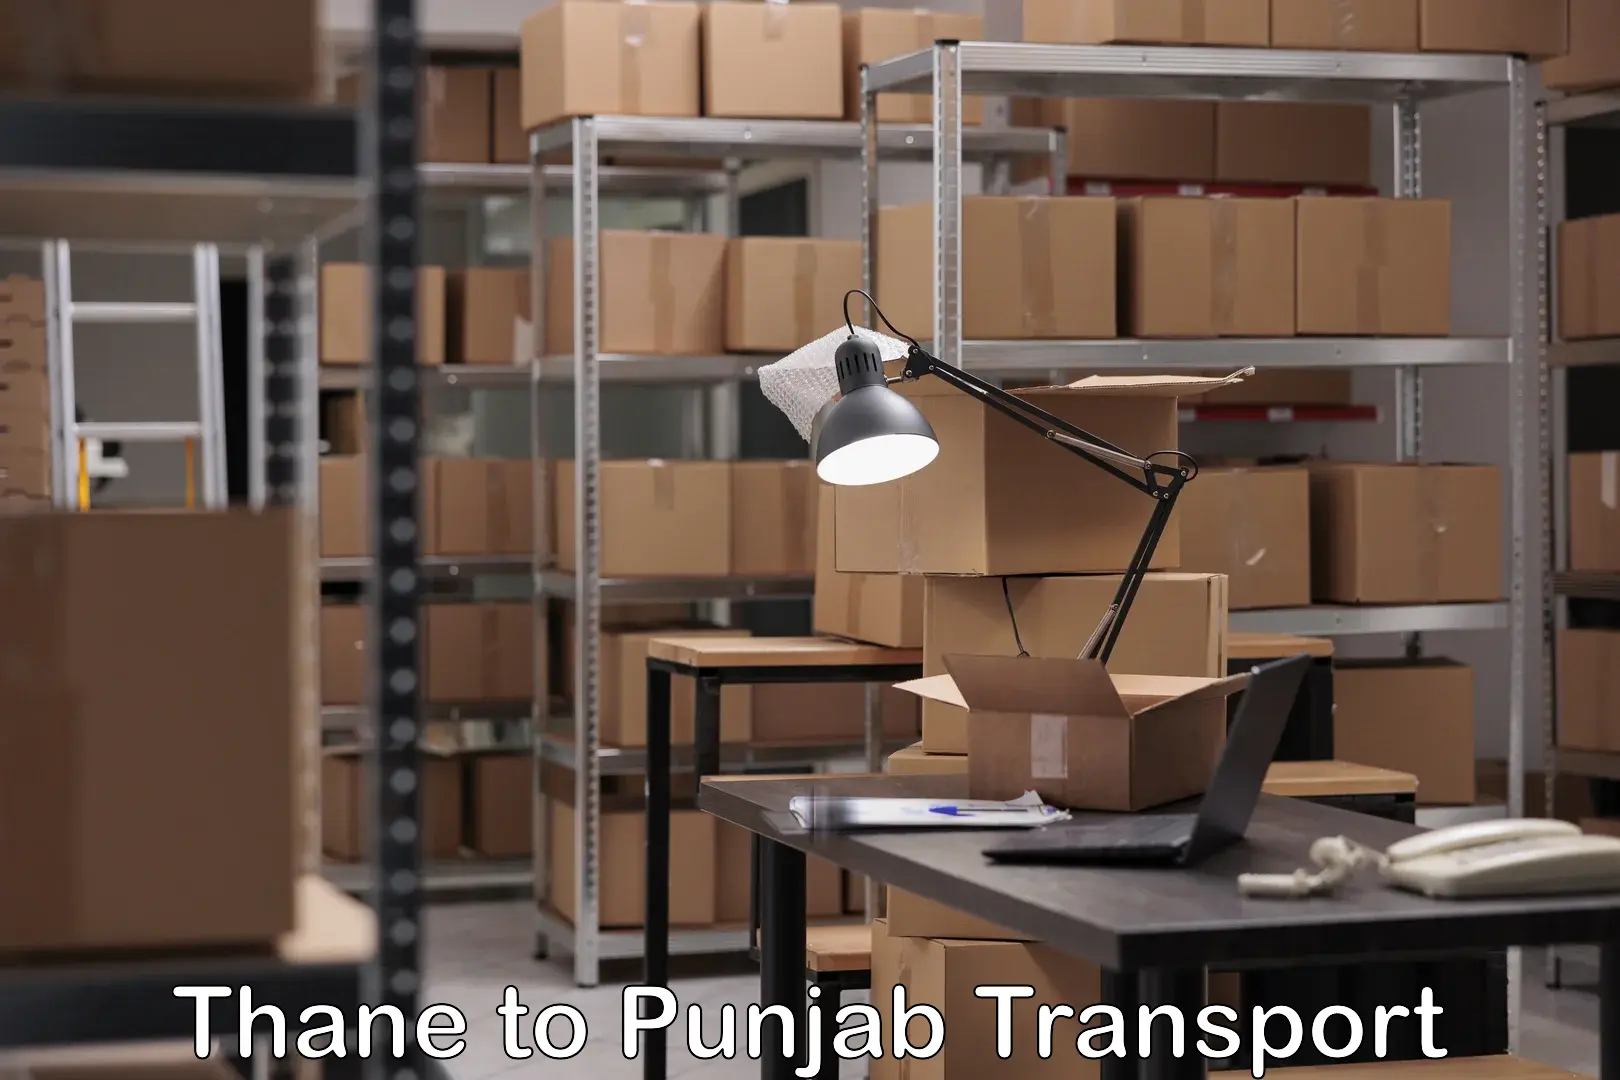 Transport in sharing Thane to Punjab